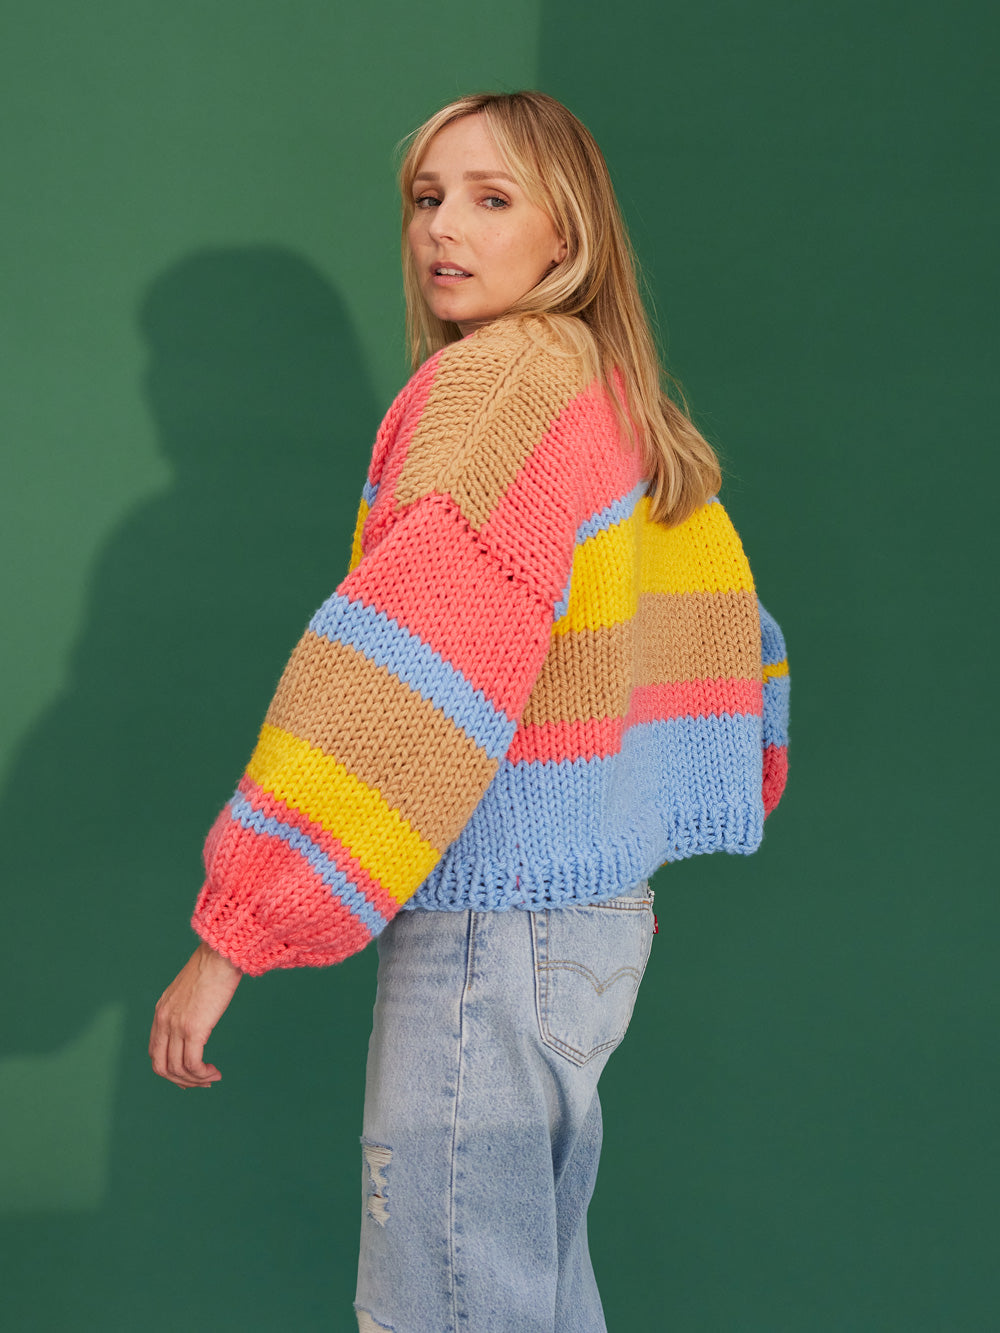 Style Me Up Rainbow Knitting Kit 